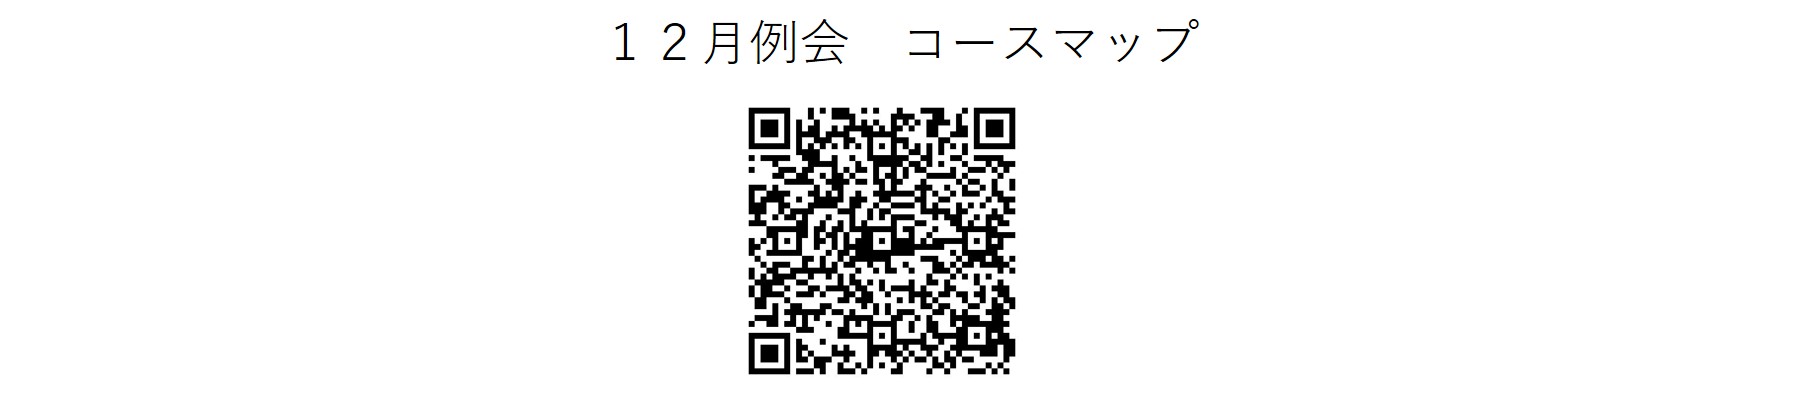 かしわんぽ用12月例会コースマップ.jpg